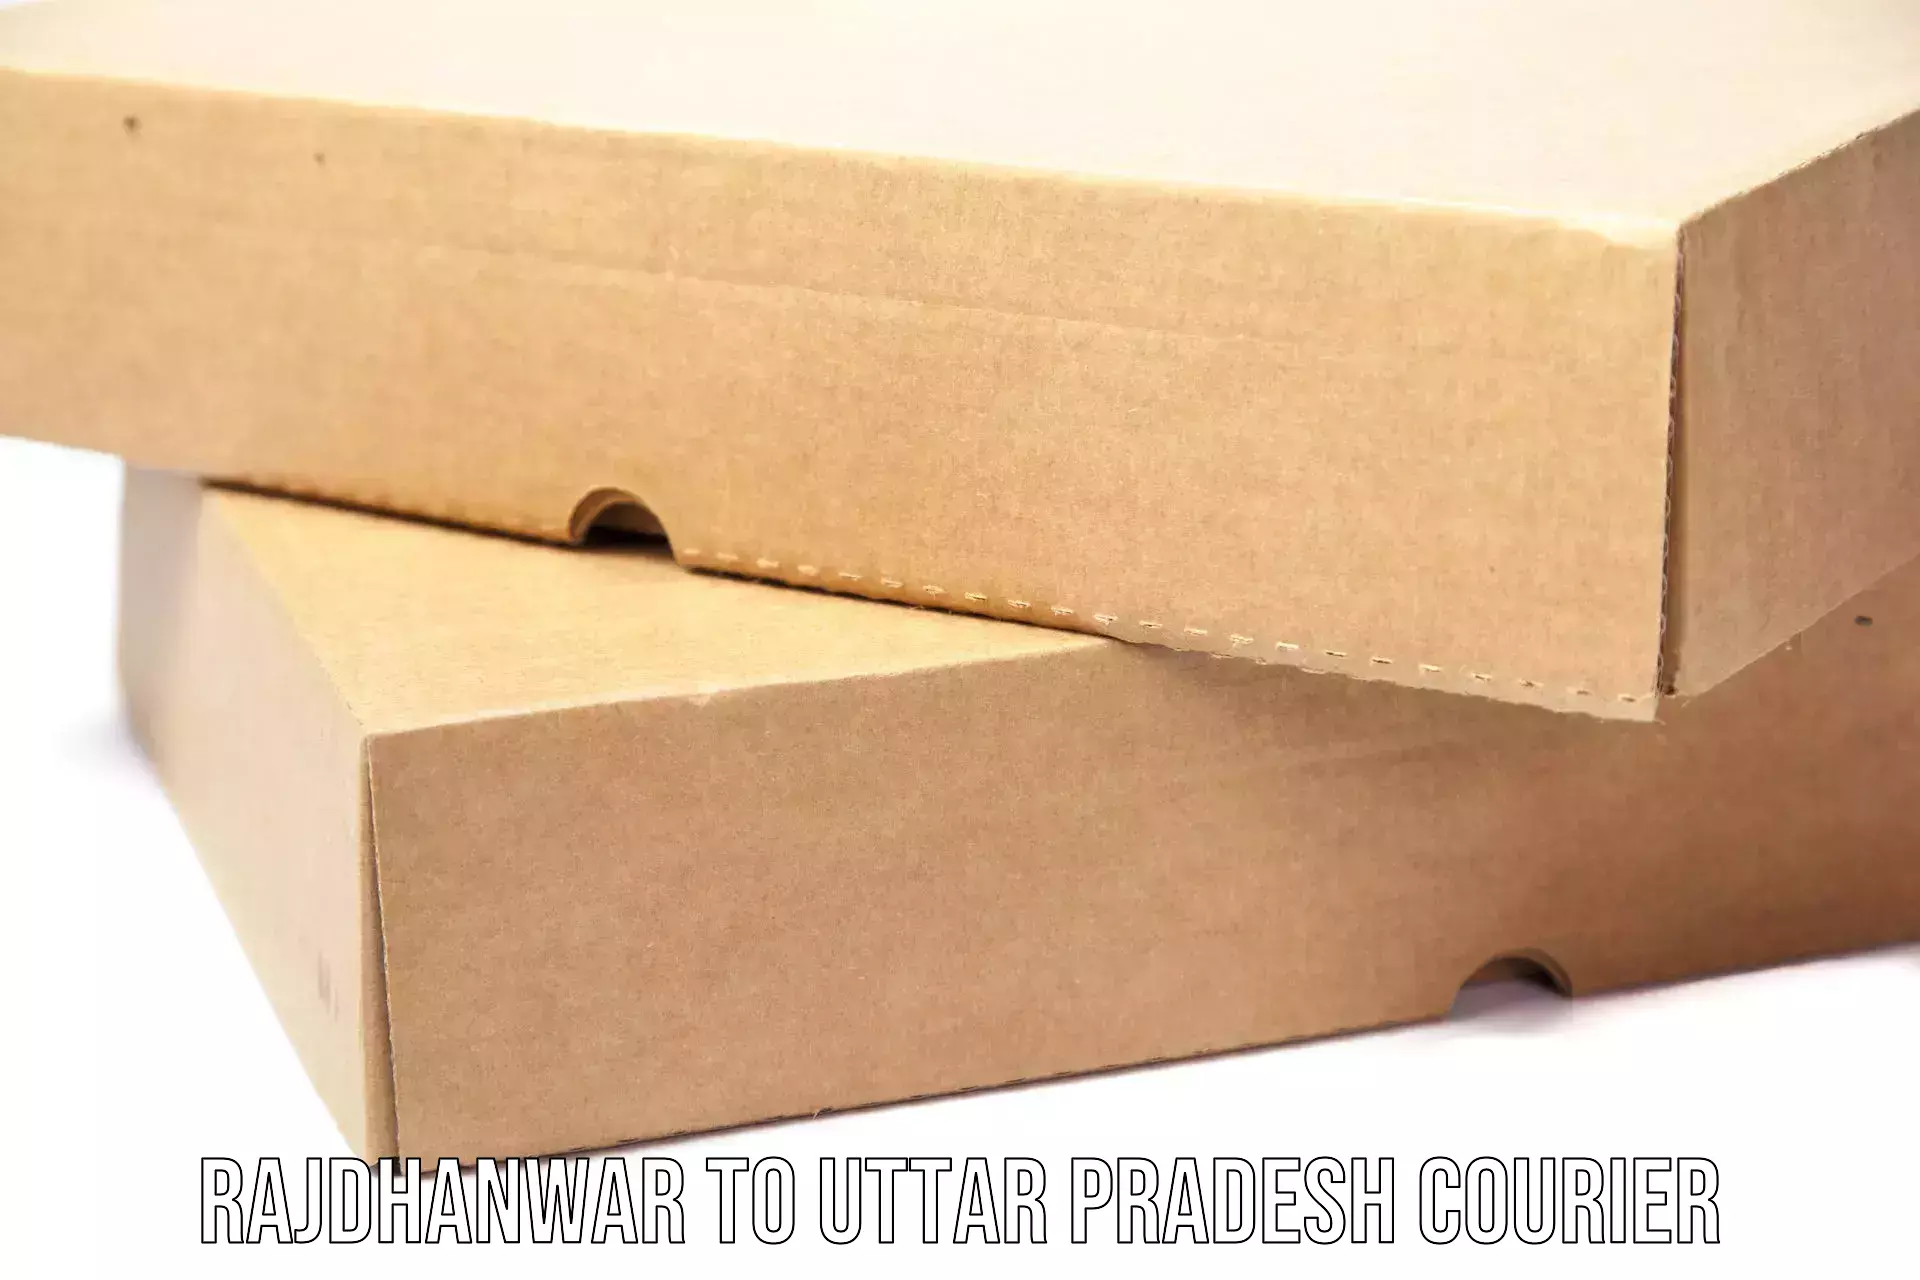 Customer-oriented courier services Rajdhanwar to Uttar Pradesh